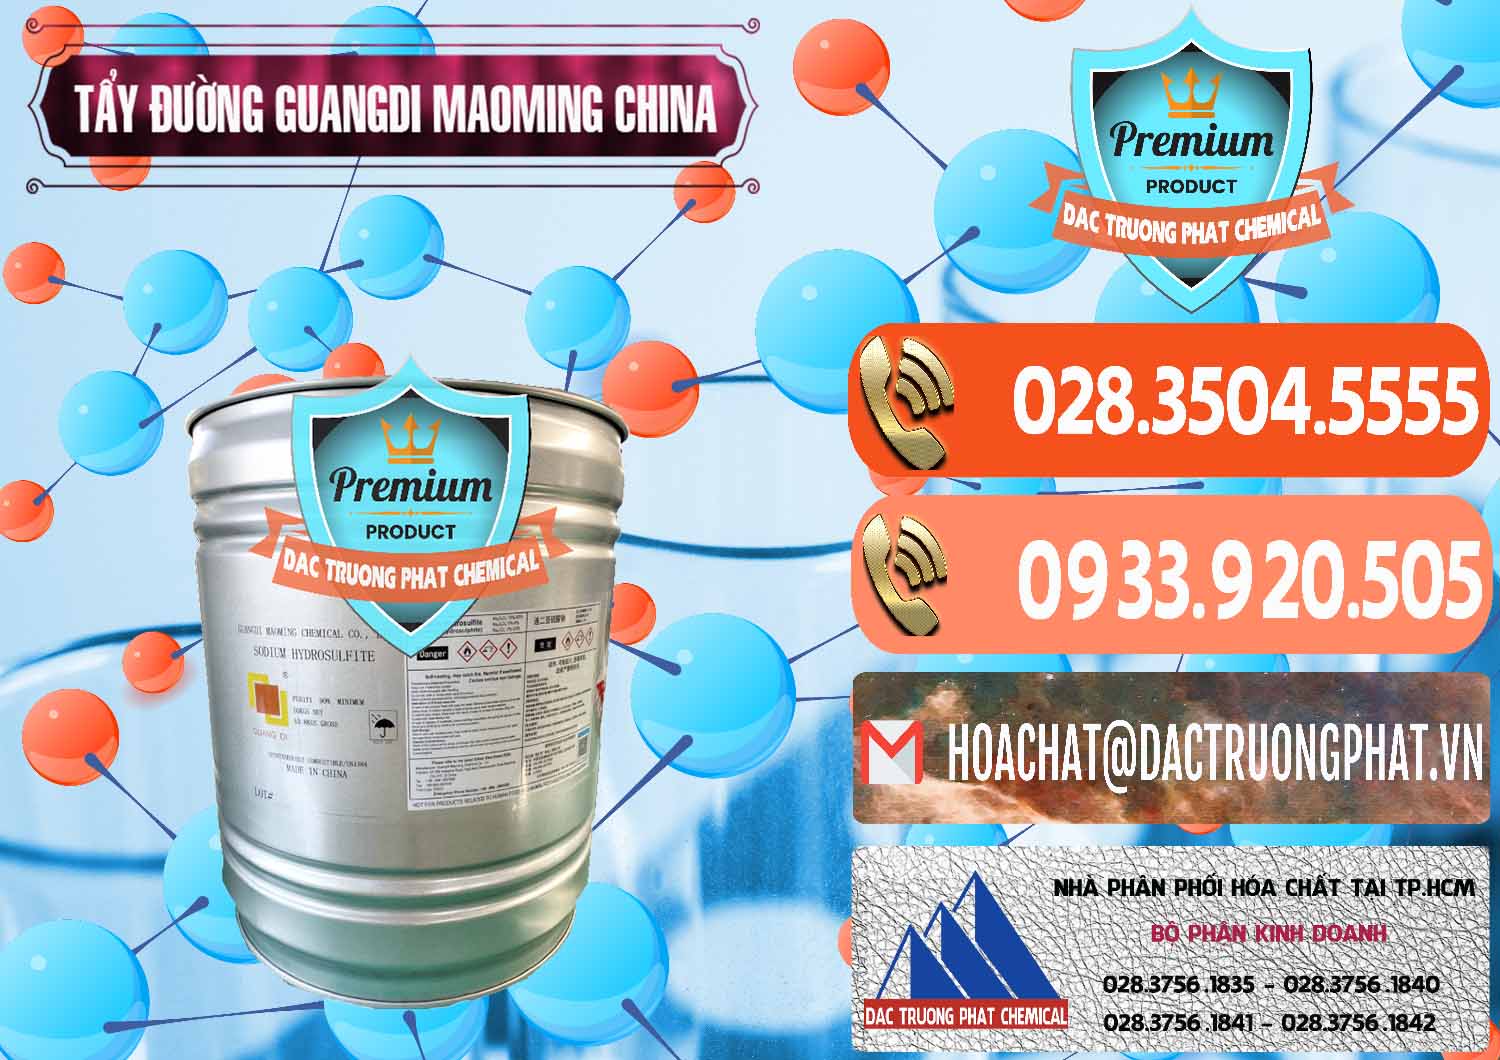 Nhà nhập khẩu _ bán Tẩy Đường - NA2S2O4 Guangdi Maoming Thùng Xám Trung Quốc China - 0402 - Đơn vị cung cấp và phân phối hóa chất tại TP.HCM - hoachatmientay.com